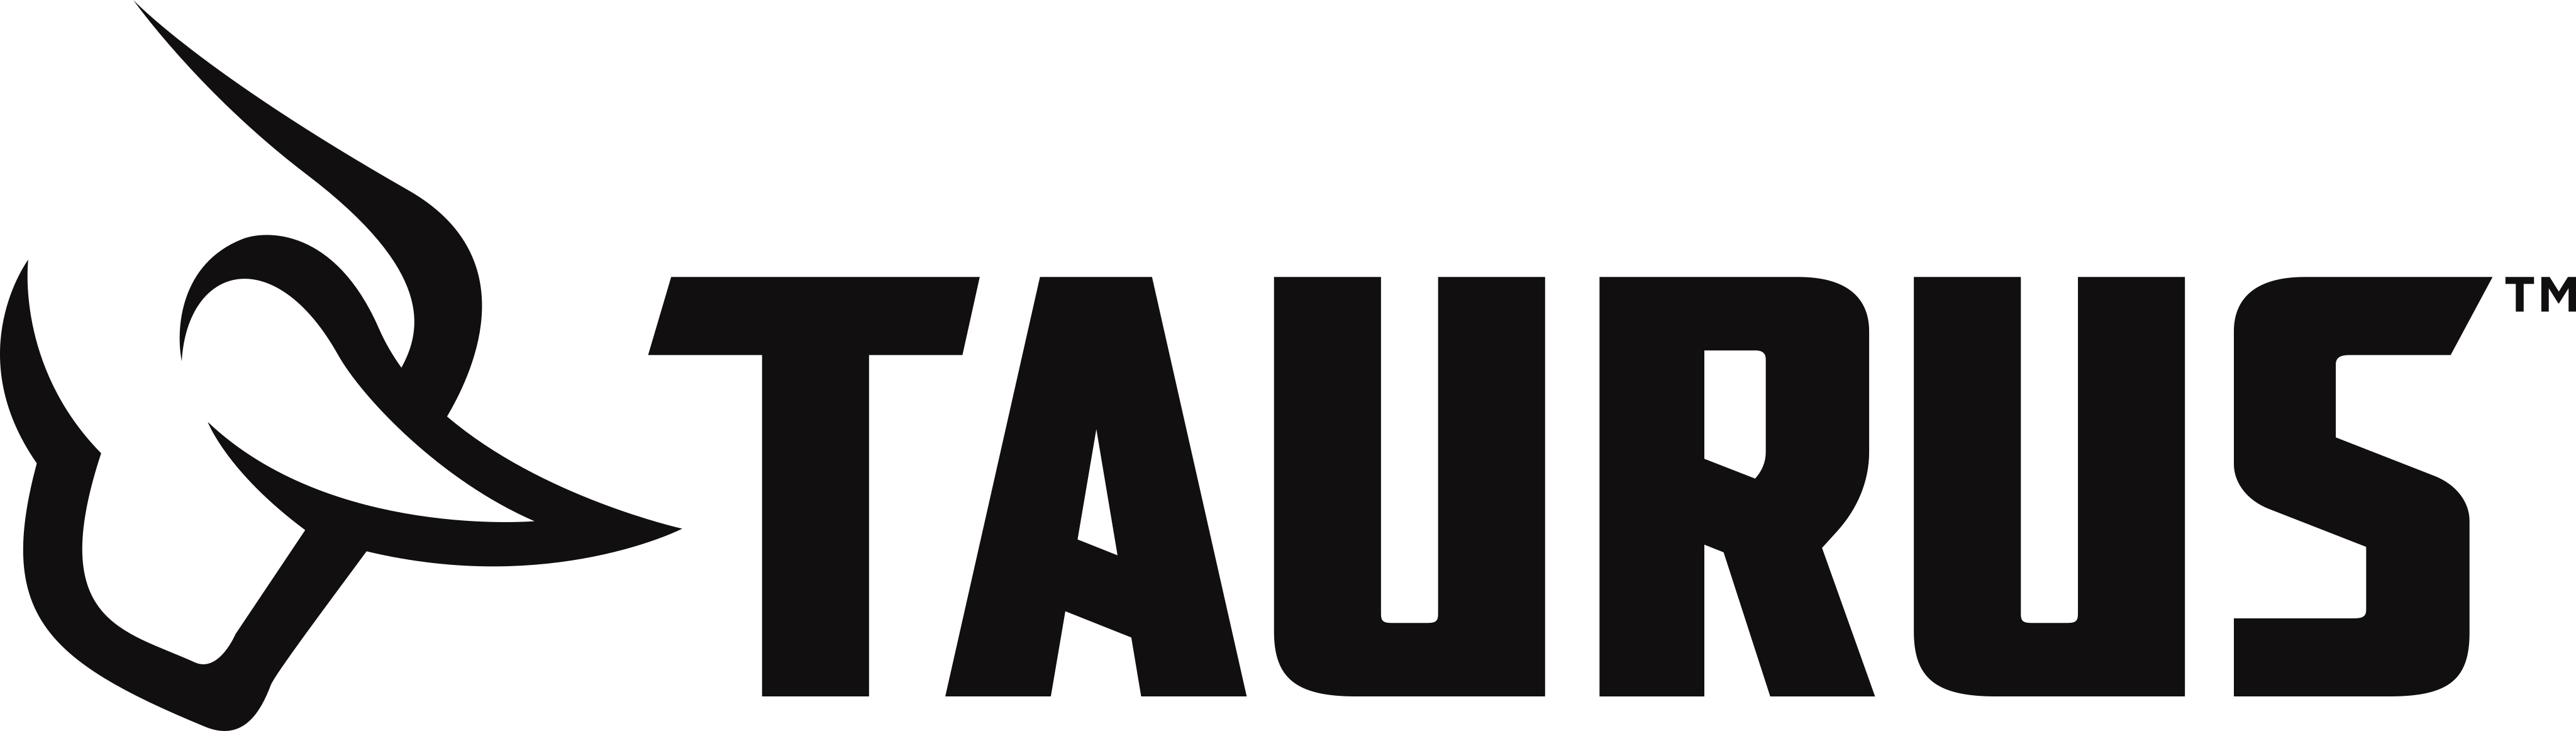 Taurus Armas Logo.